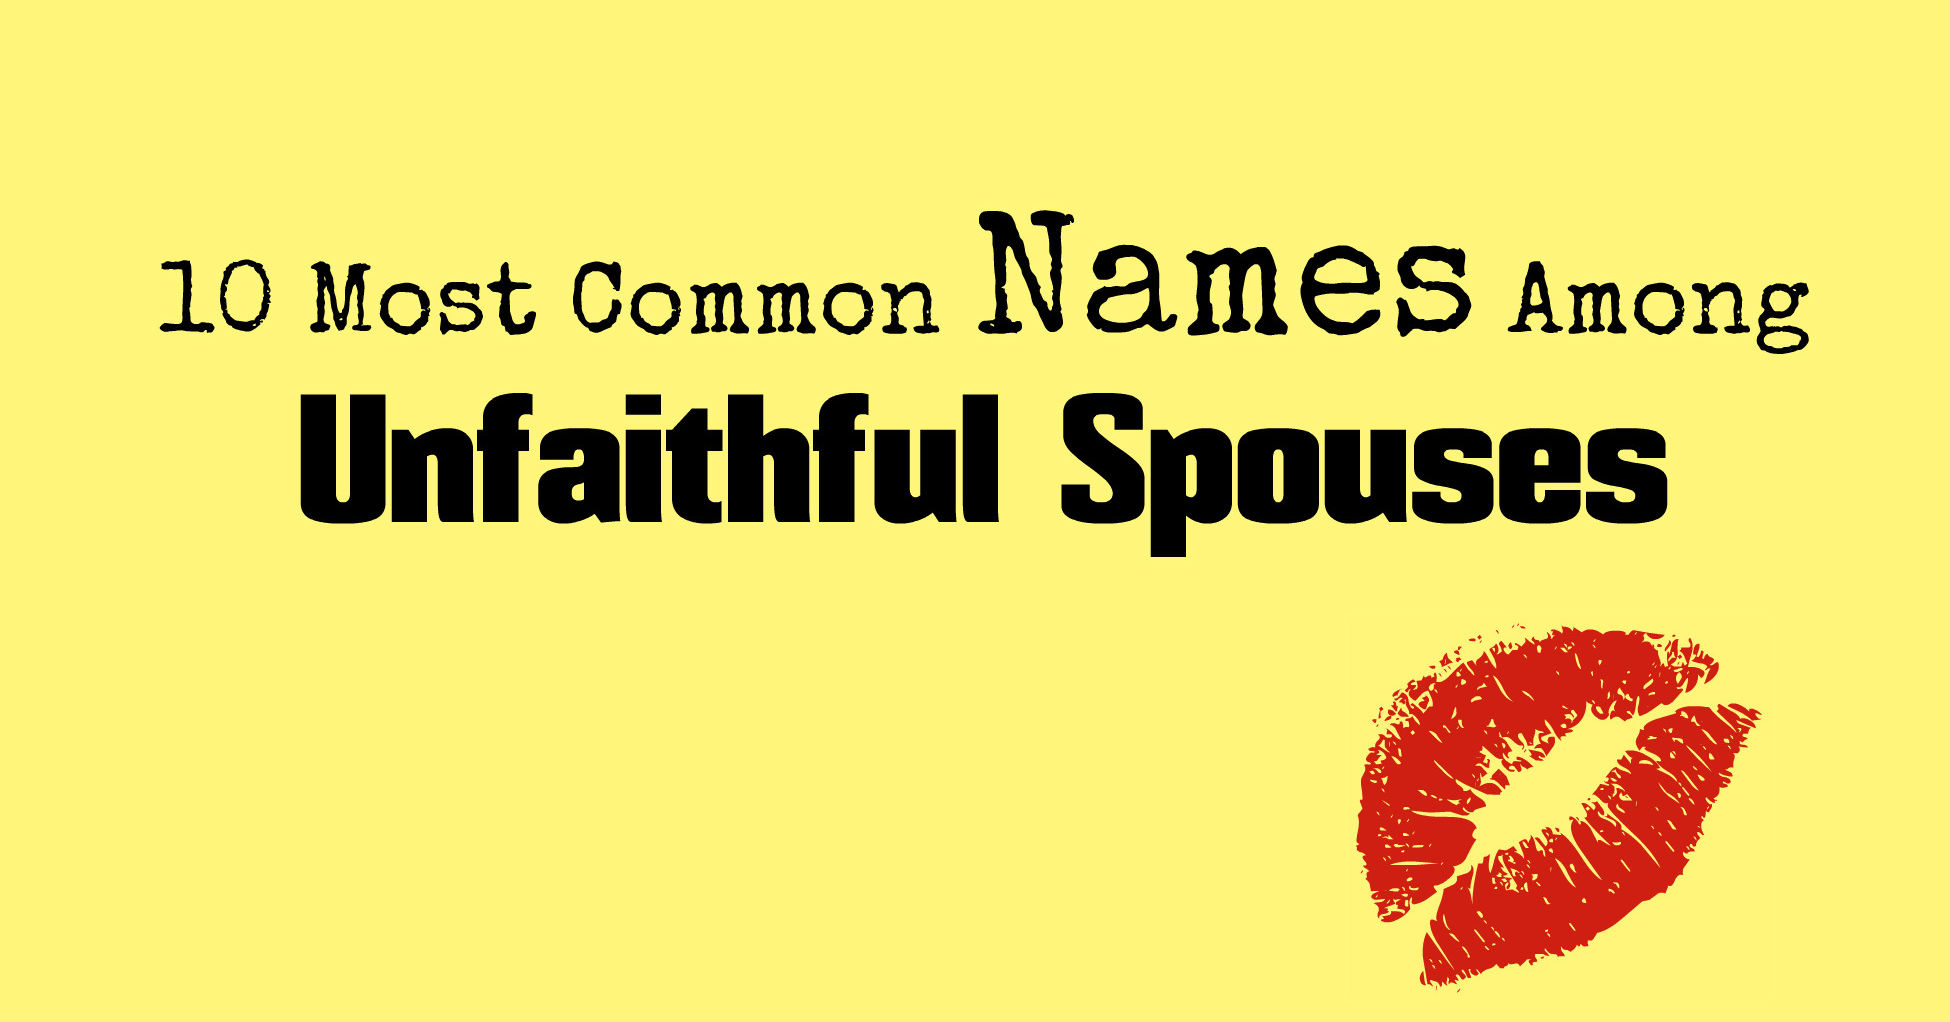 unfaithful-names-quiz